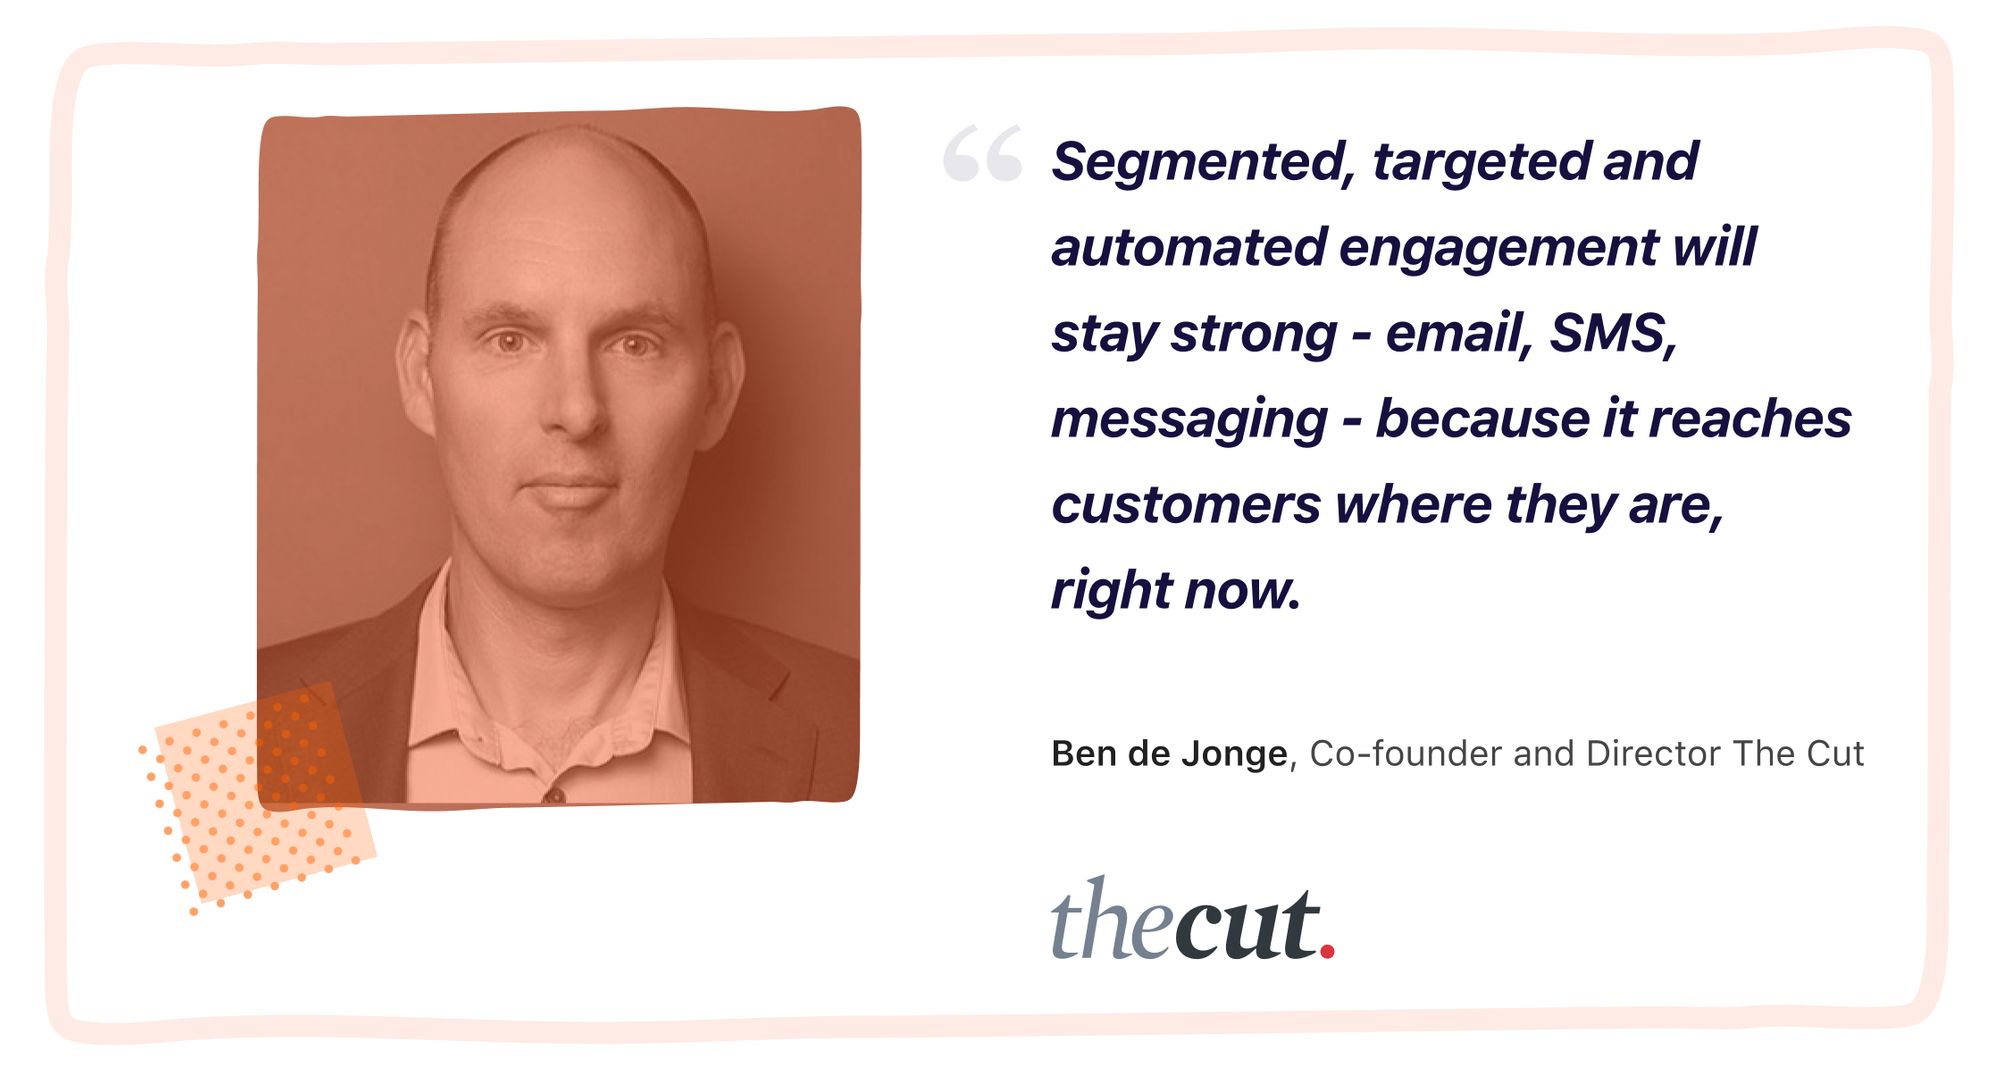 Ben-de-Jonge-The-Cut-Shopify-Expert-Quote